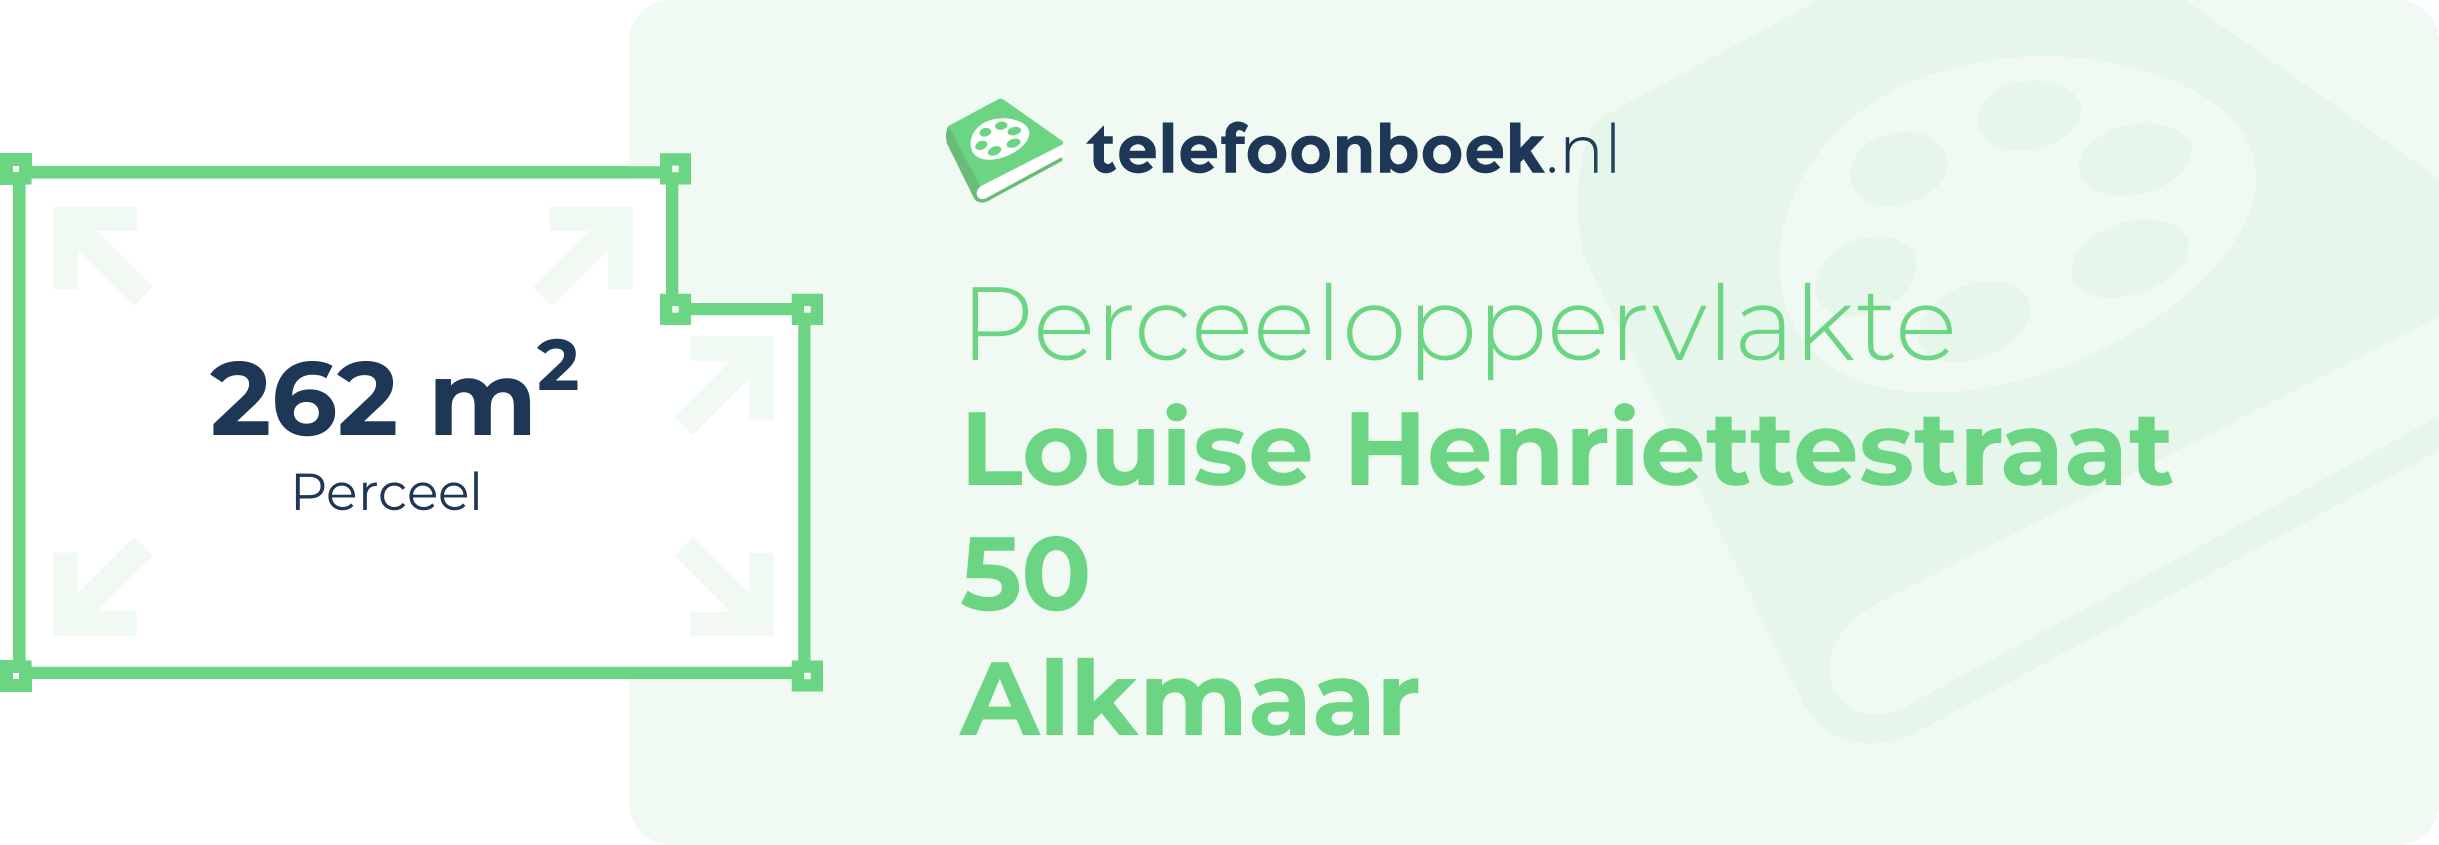 Perceeloppervlakte Louise Henriettestraat 50 Alkmaar